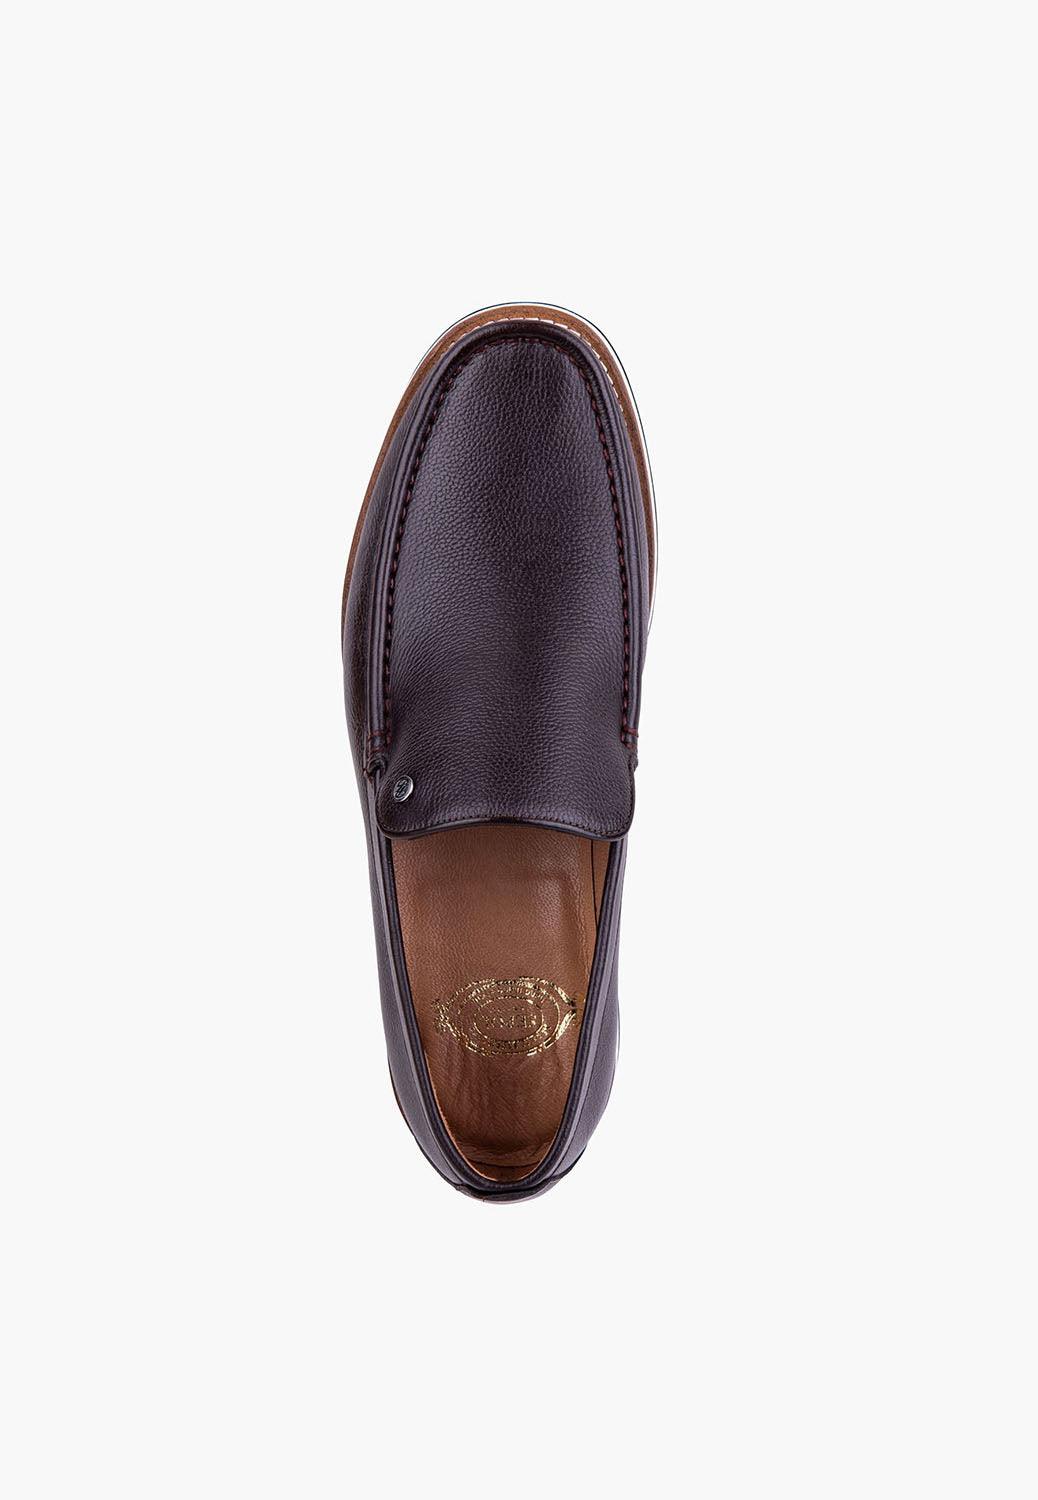 Voyage Loafer Brown - SEPOL Shoes